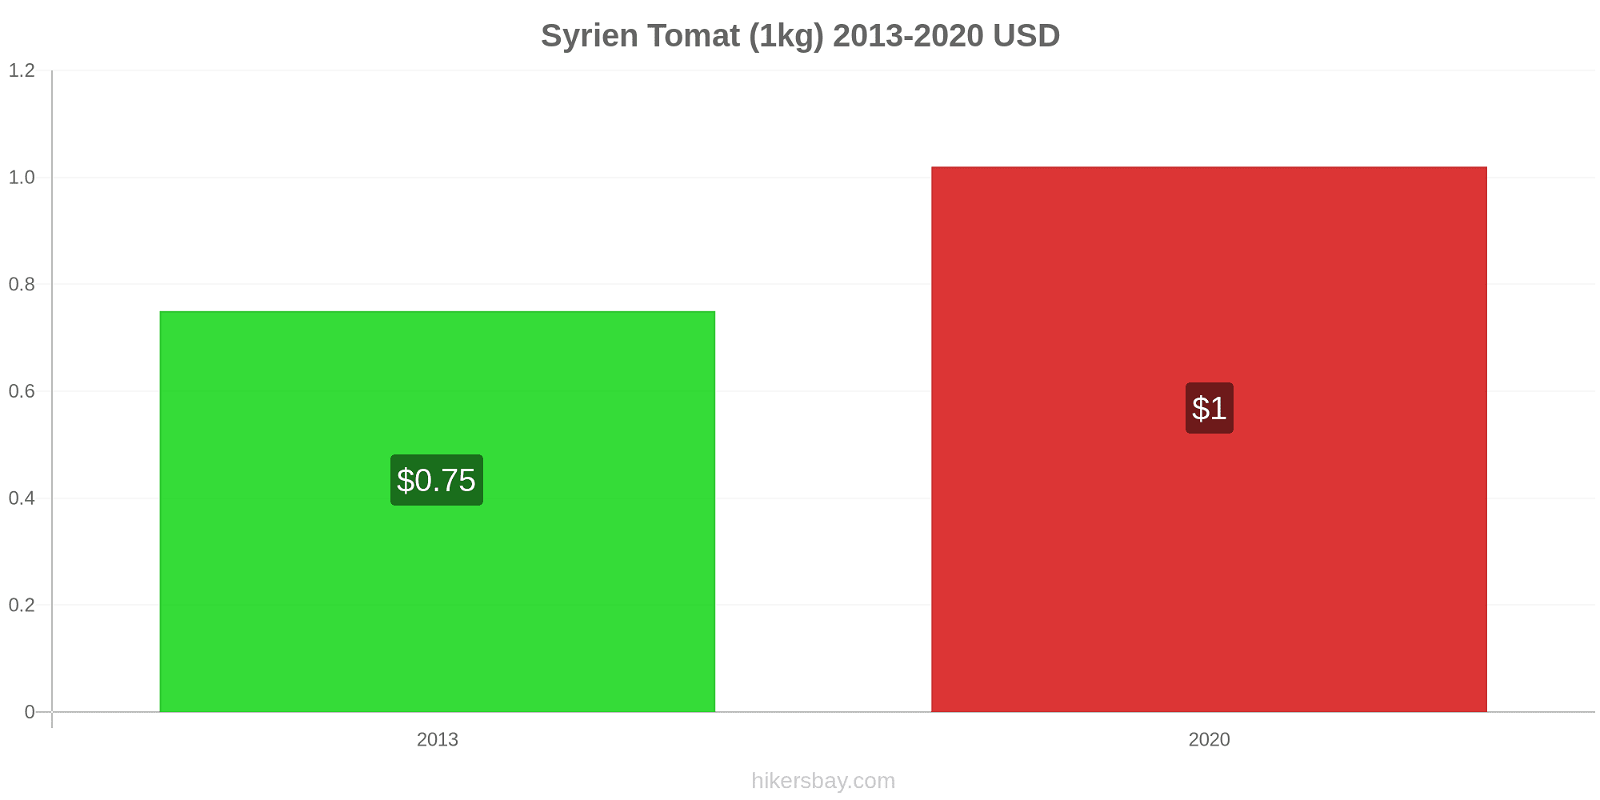 Syrien prisförändringar Tomat (1kg) hikersbay.com